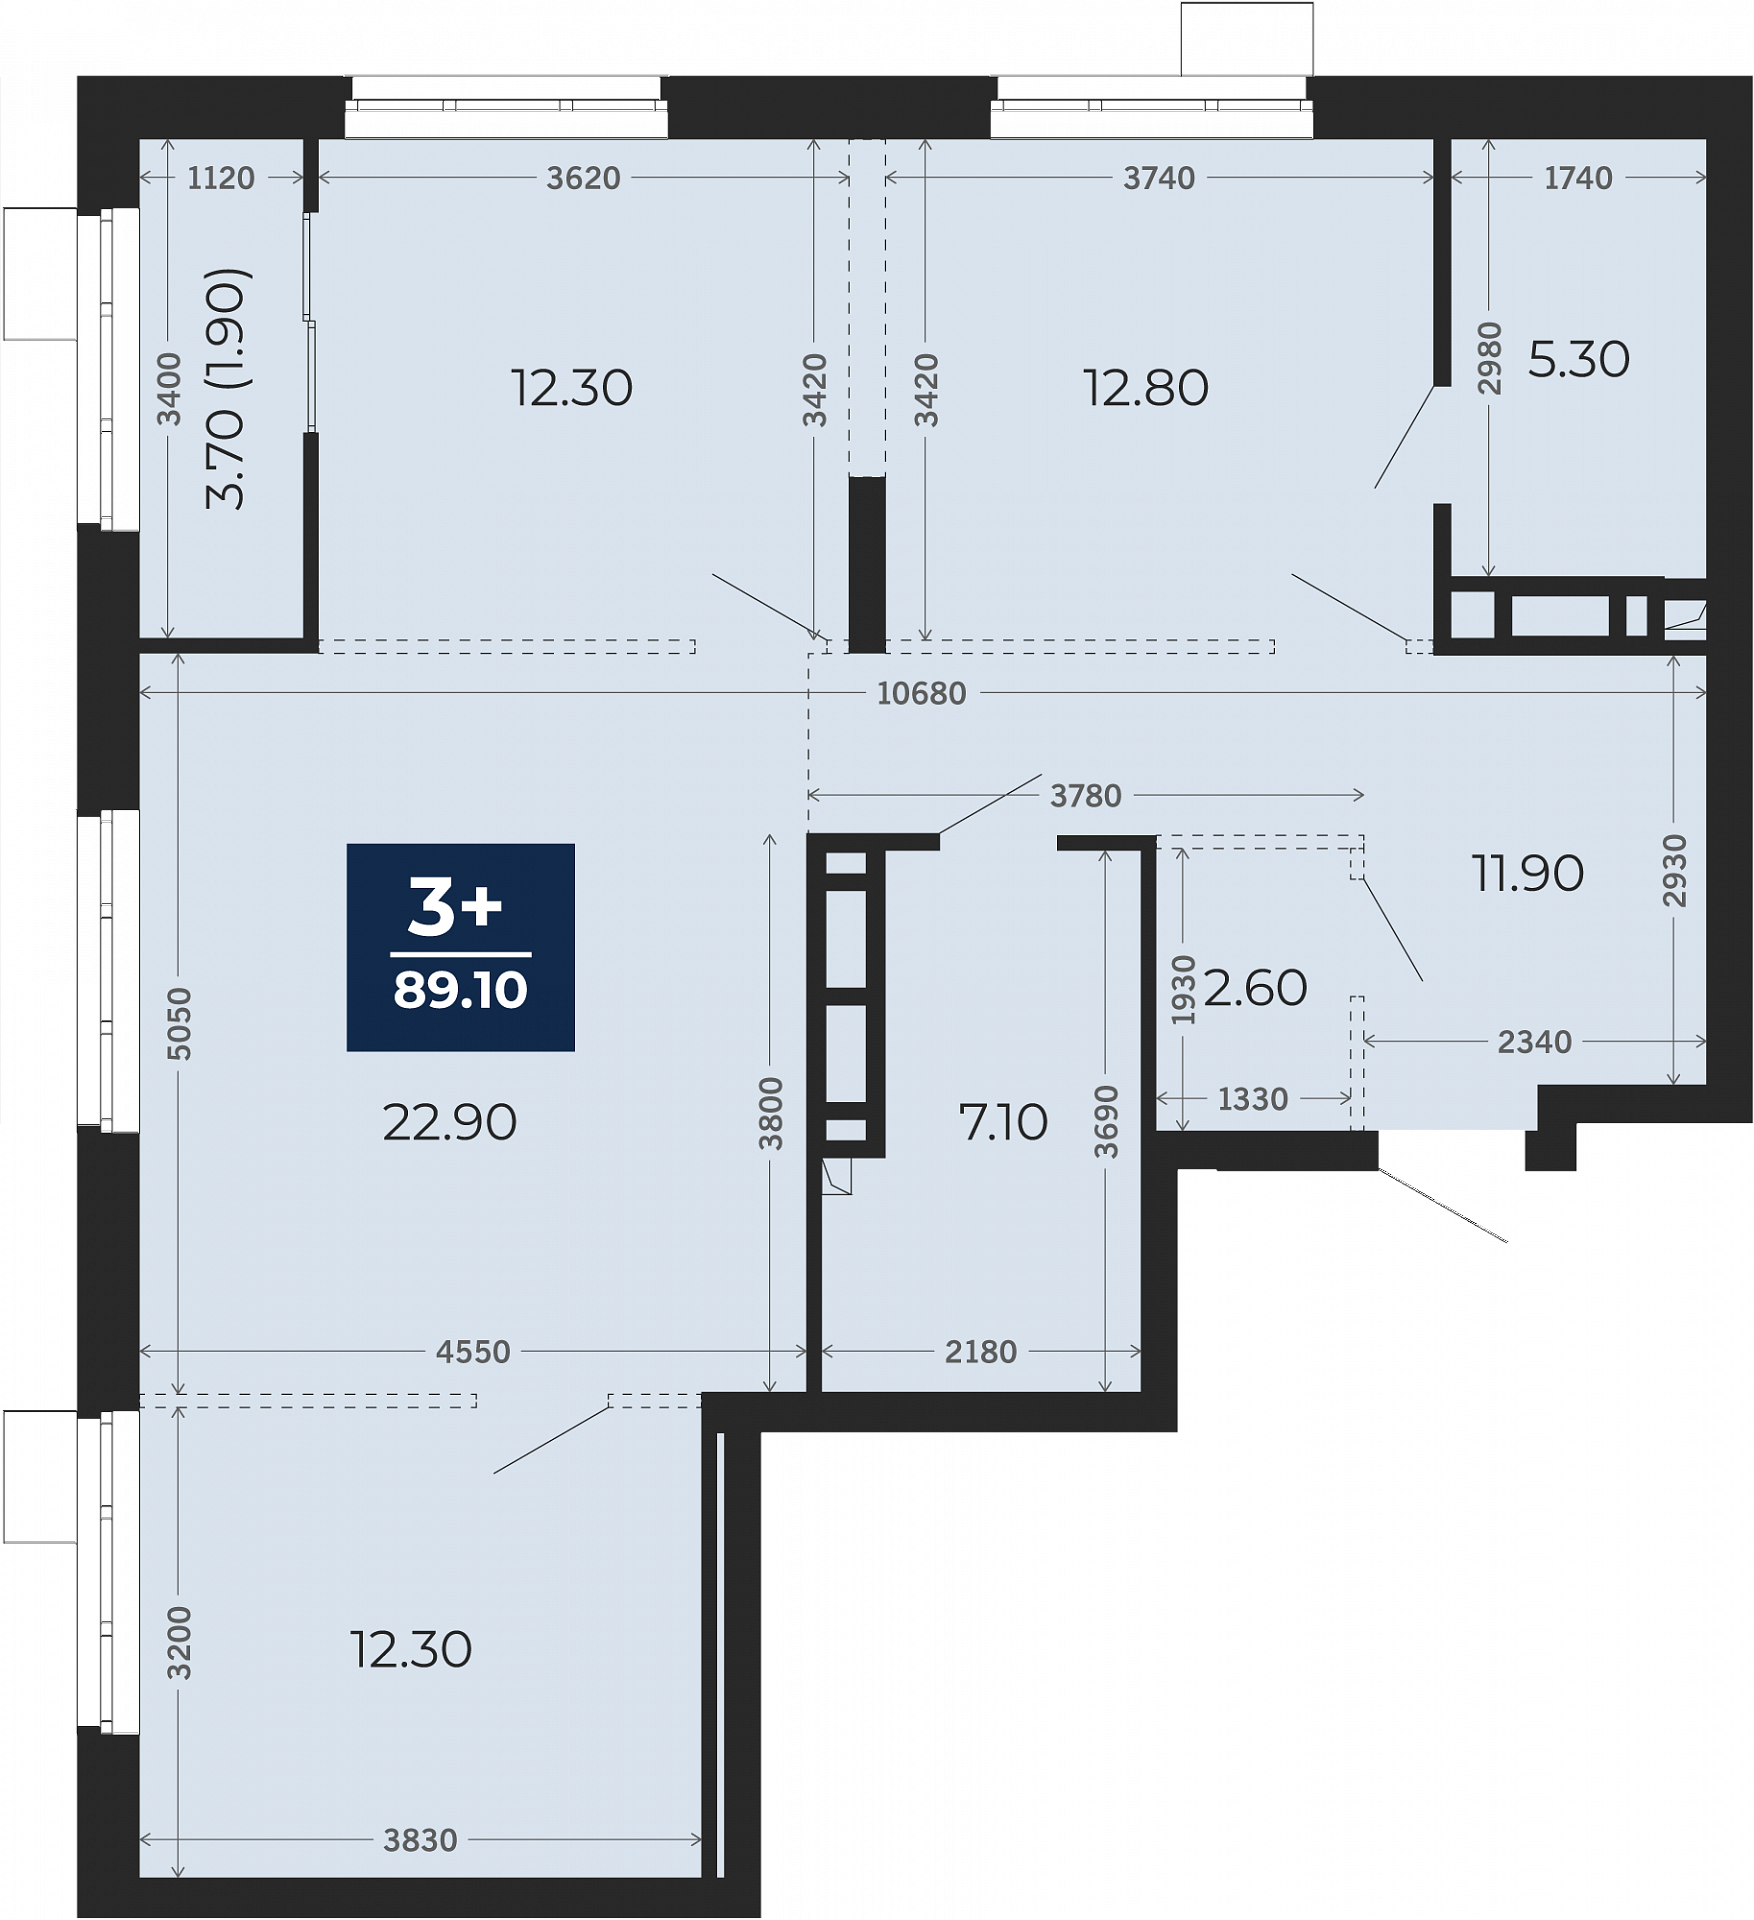 Квартира № 83, 3-комнатная, 89.1 кв. м, 13 этаж